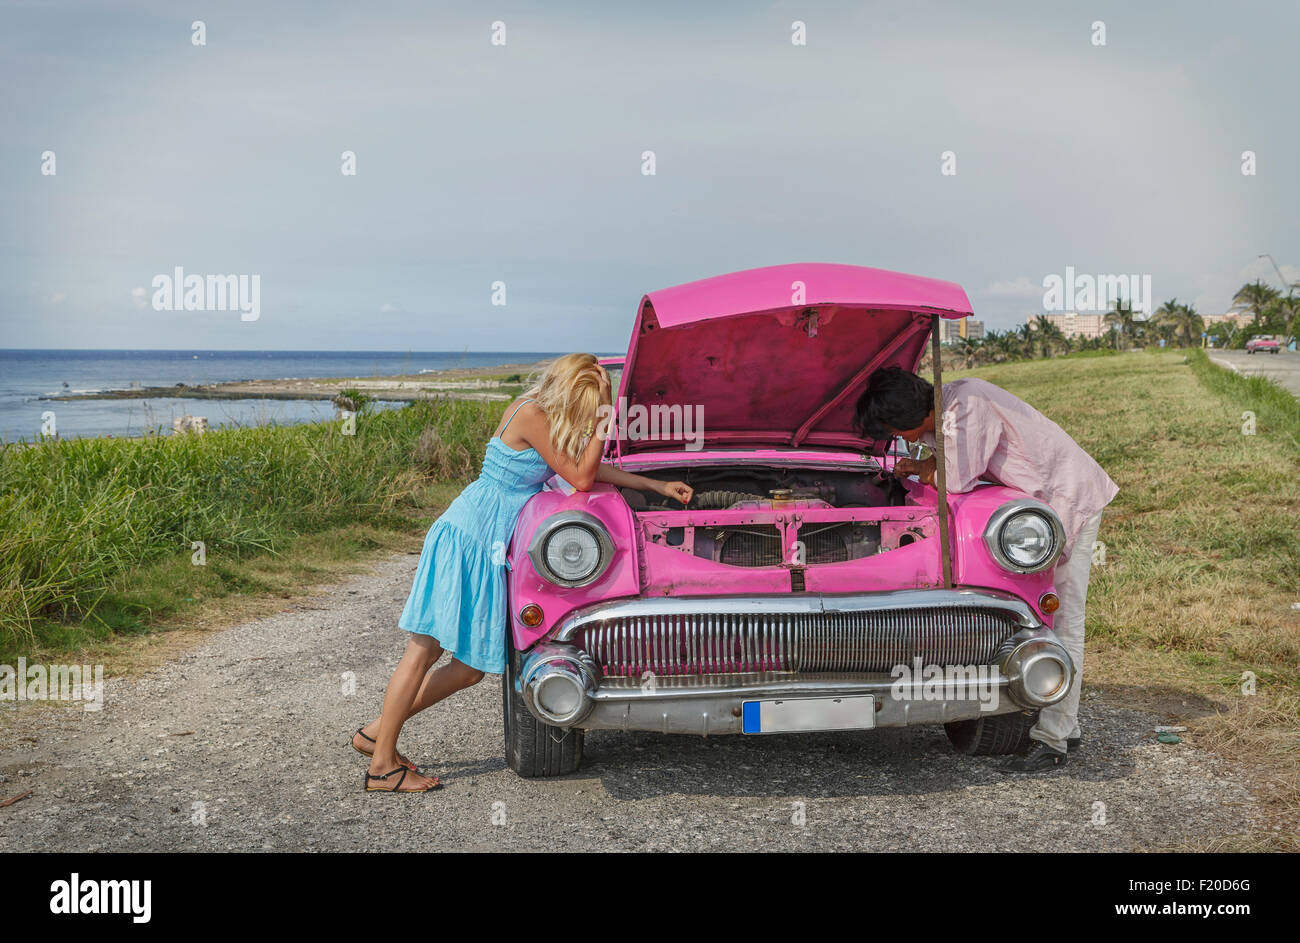 Pareja joven tratando de arreglar una vendimia convertible en la costa, La Habana, Cuba Foto de stock